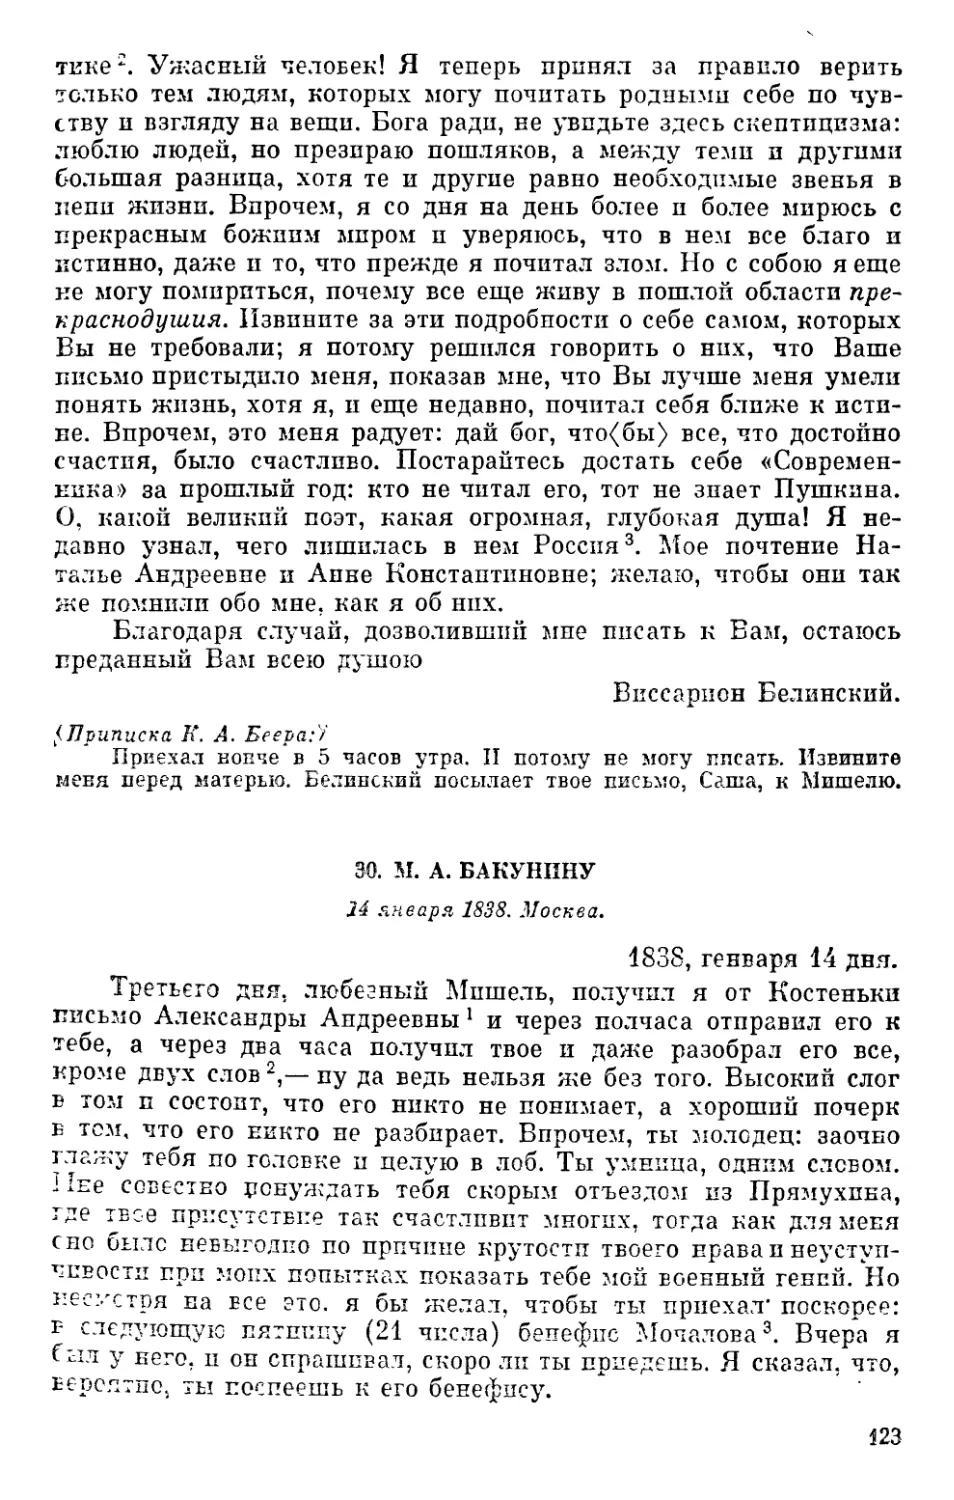 30. М. А. Бакунину. 14 января 1838